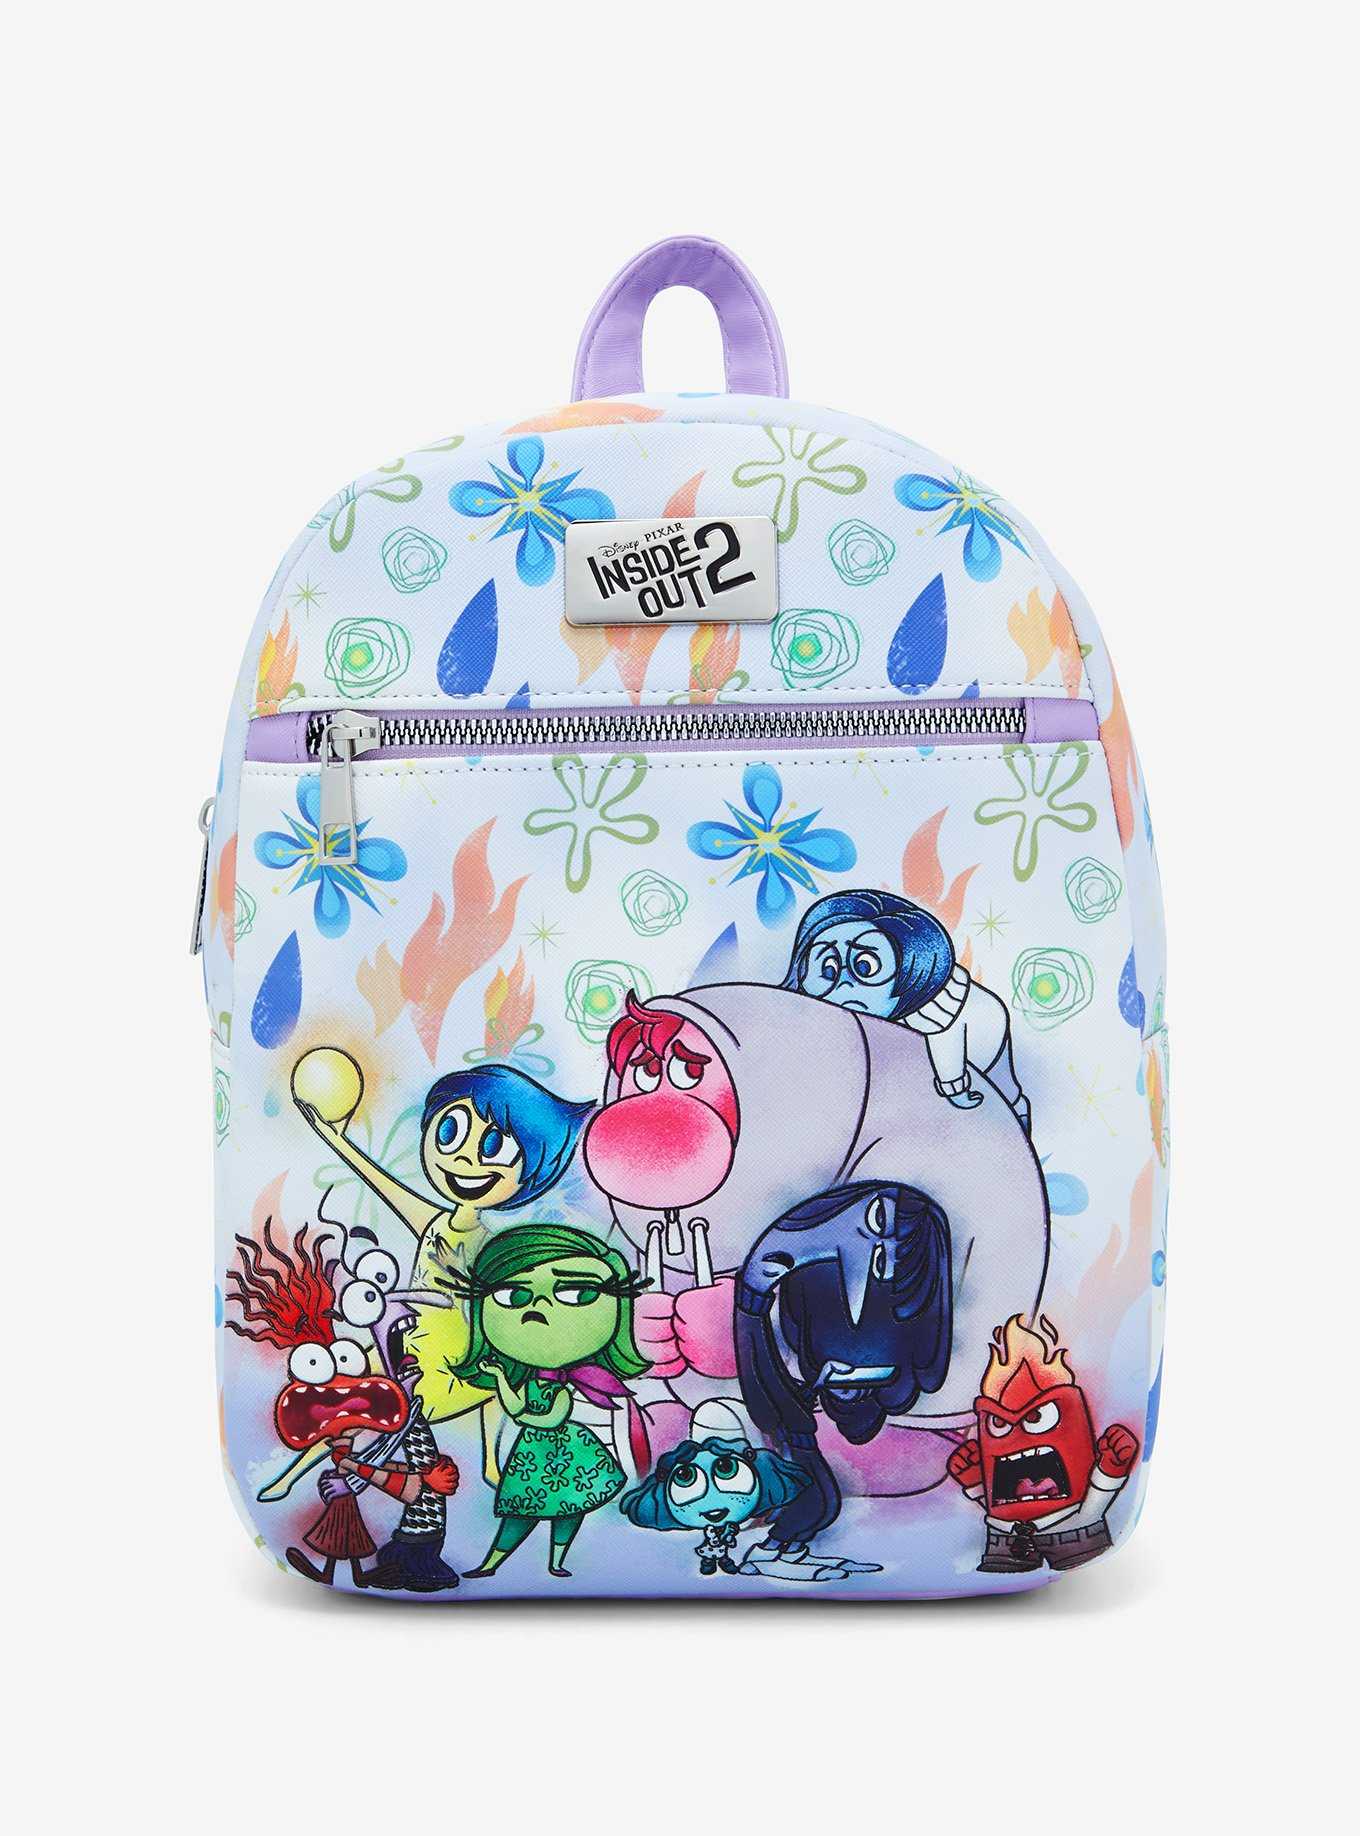 Disney Pixar Inside Out 2 Emotions Group Mini Backpack, , hi-res